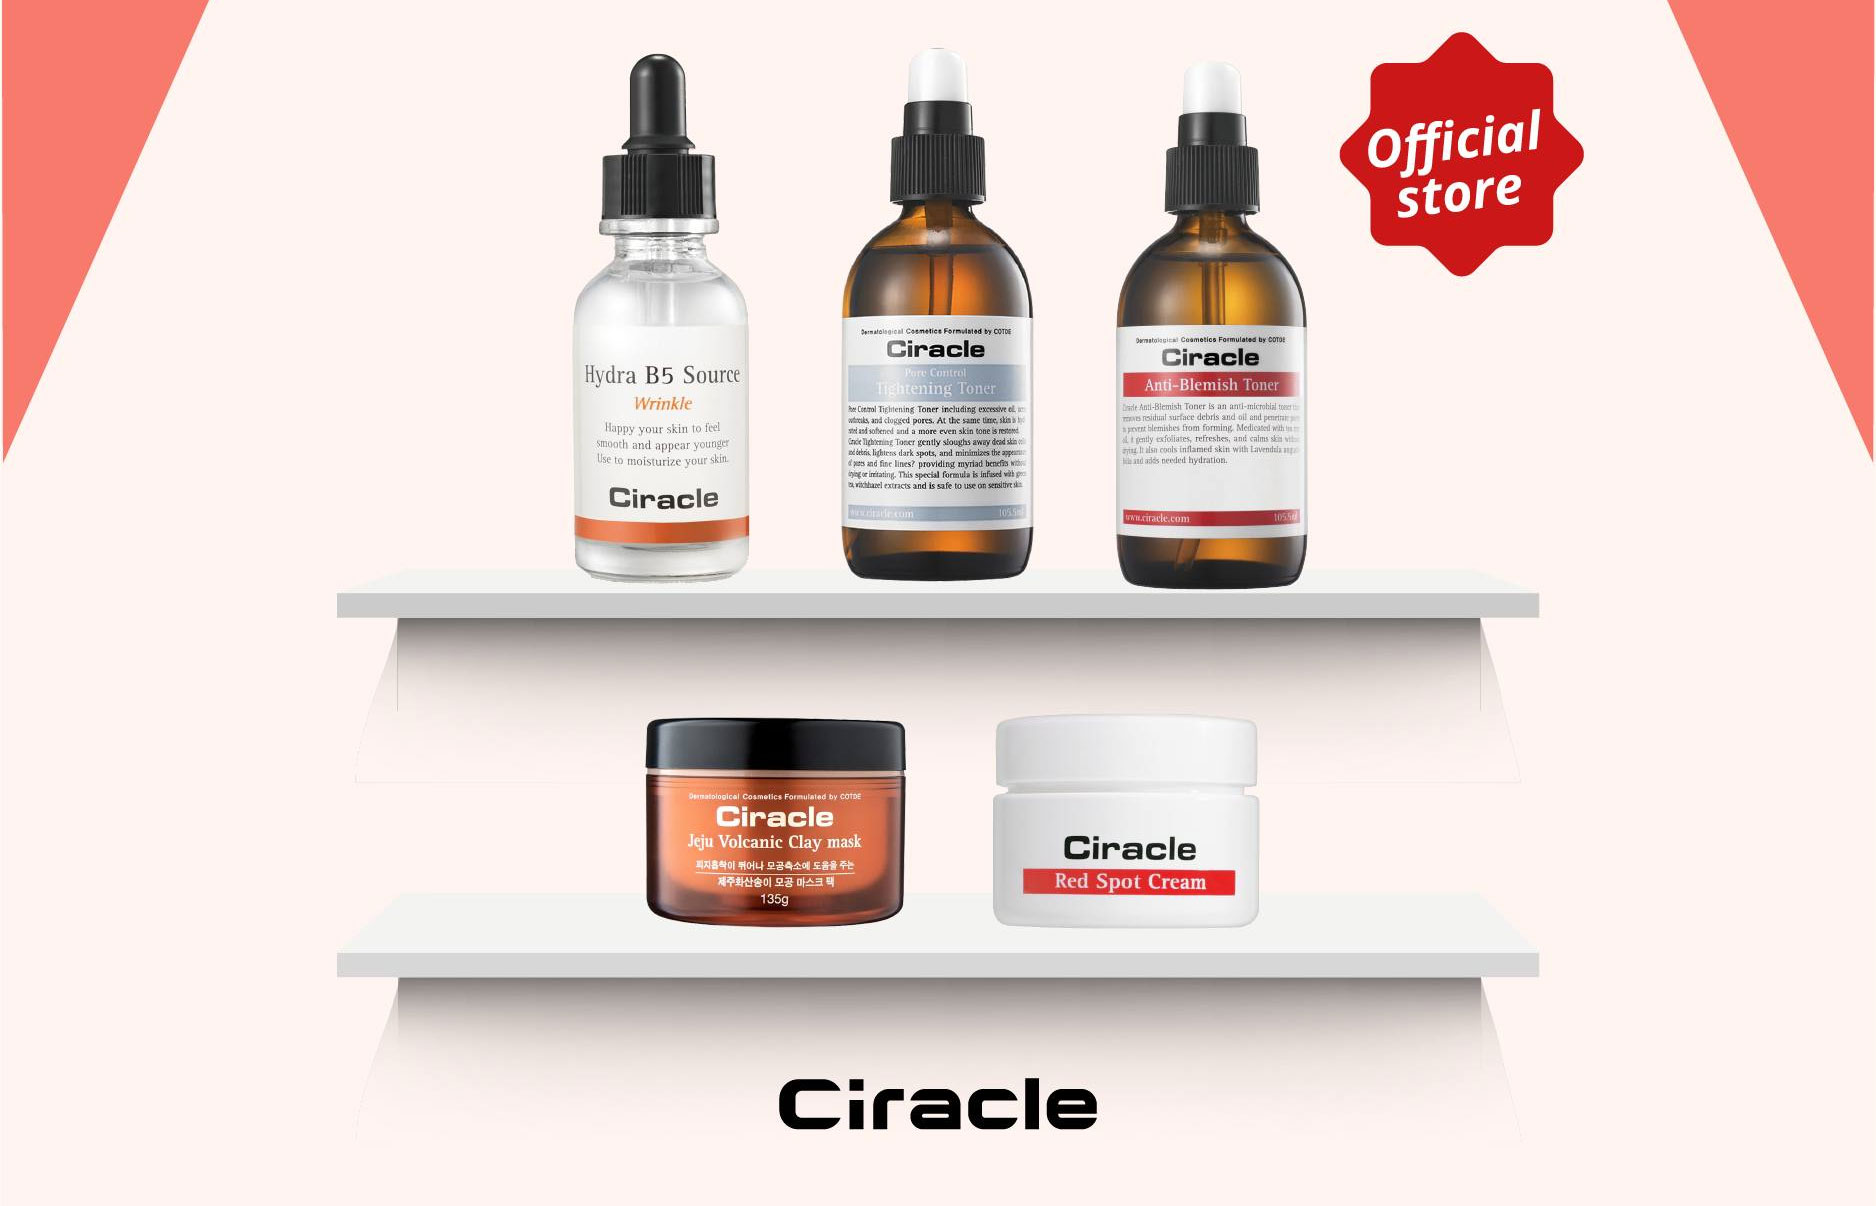 Một số sản phẩm nổi bật của thương hiệu Ciracle